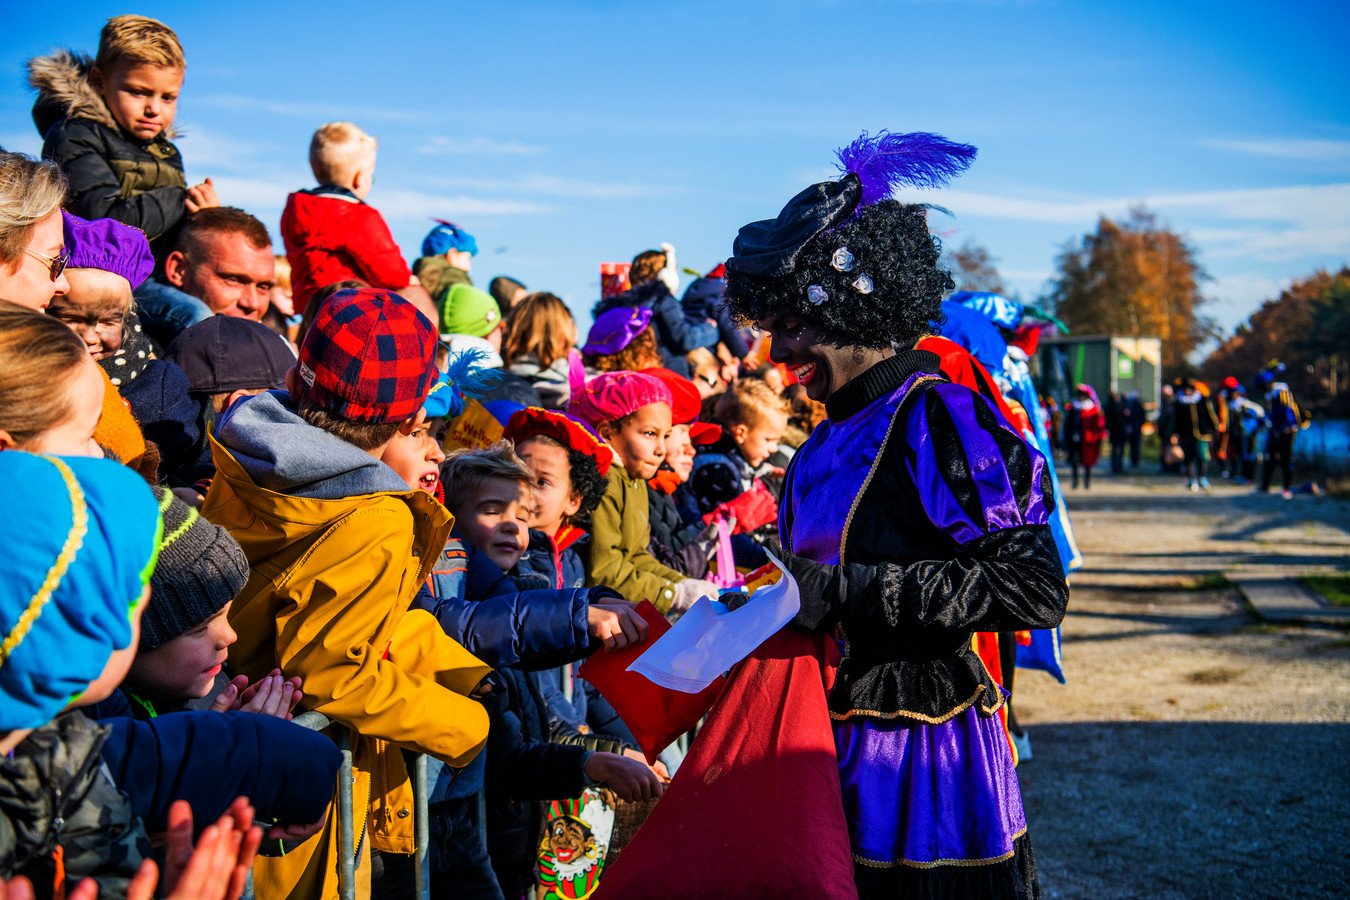 Ontleden Gespierd boiler Een high five met Zwarte Piet: intocht van Sinterklaas in Best en Nuenen |  Foto | ed.nl